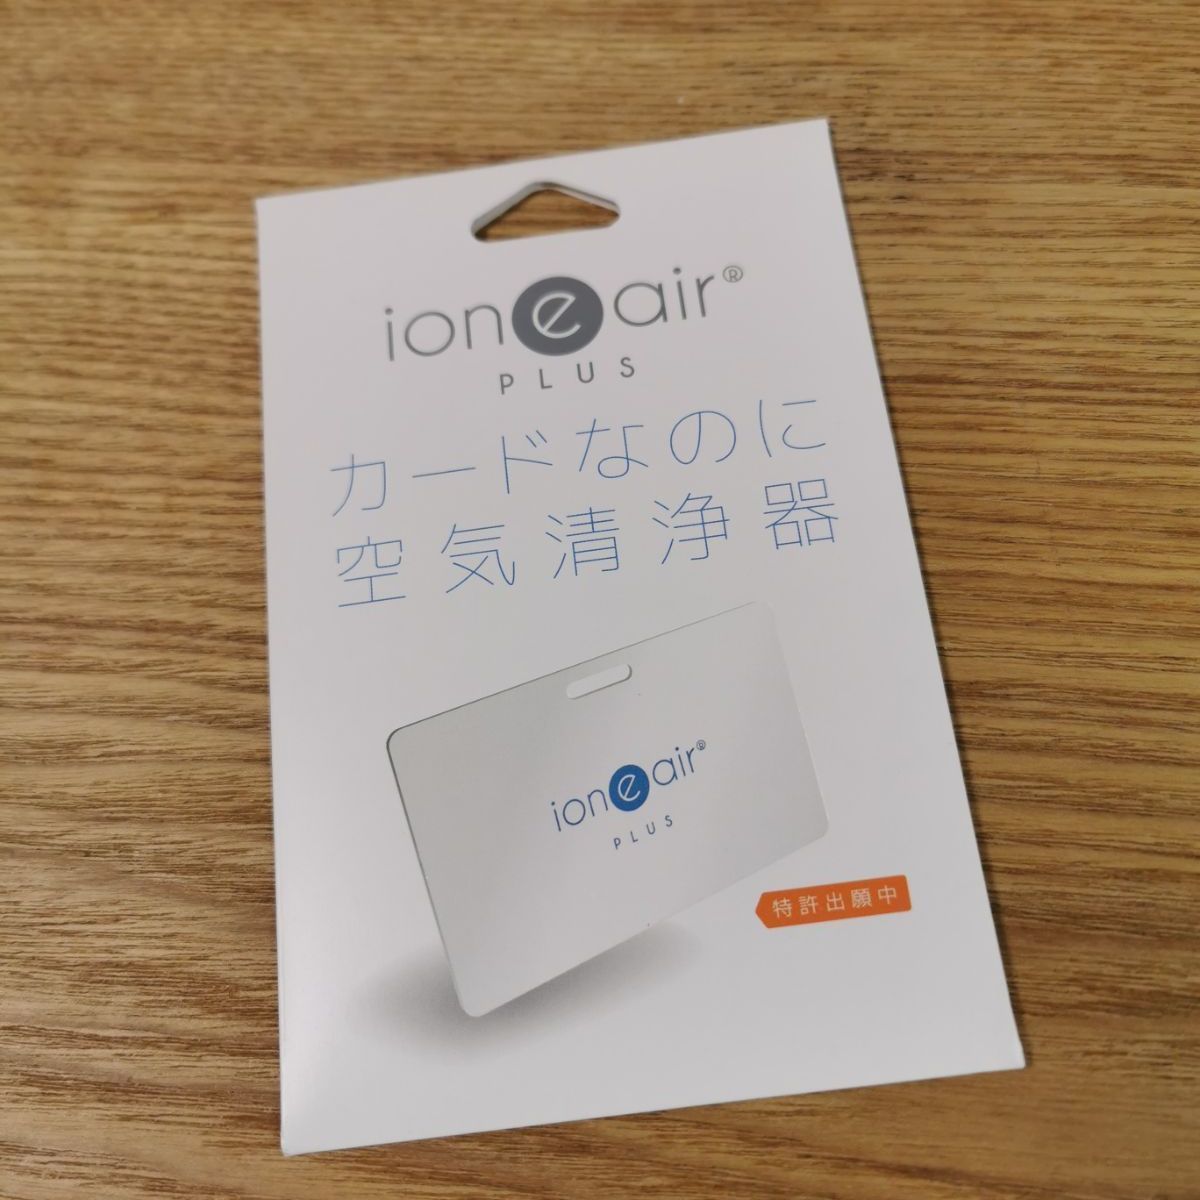 イオニアカード PLUS 【ioneair】 カードなのに空気清浄器 日本製